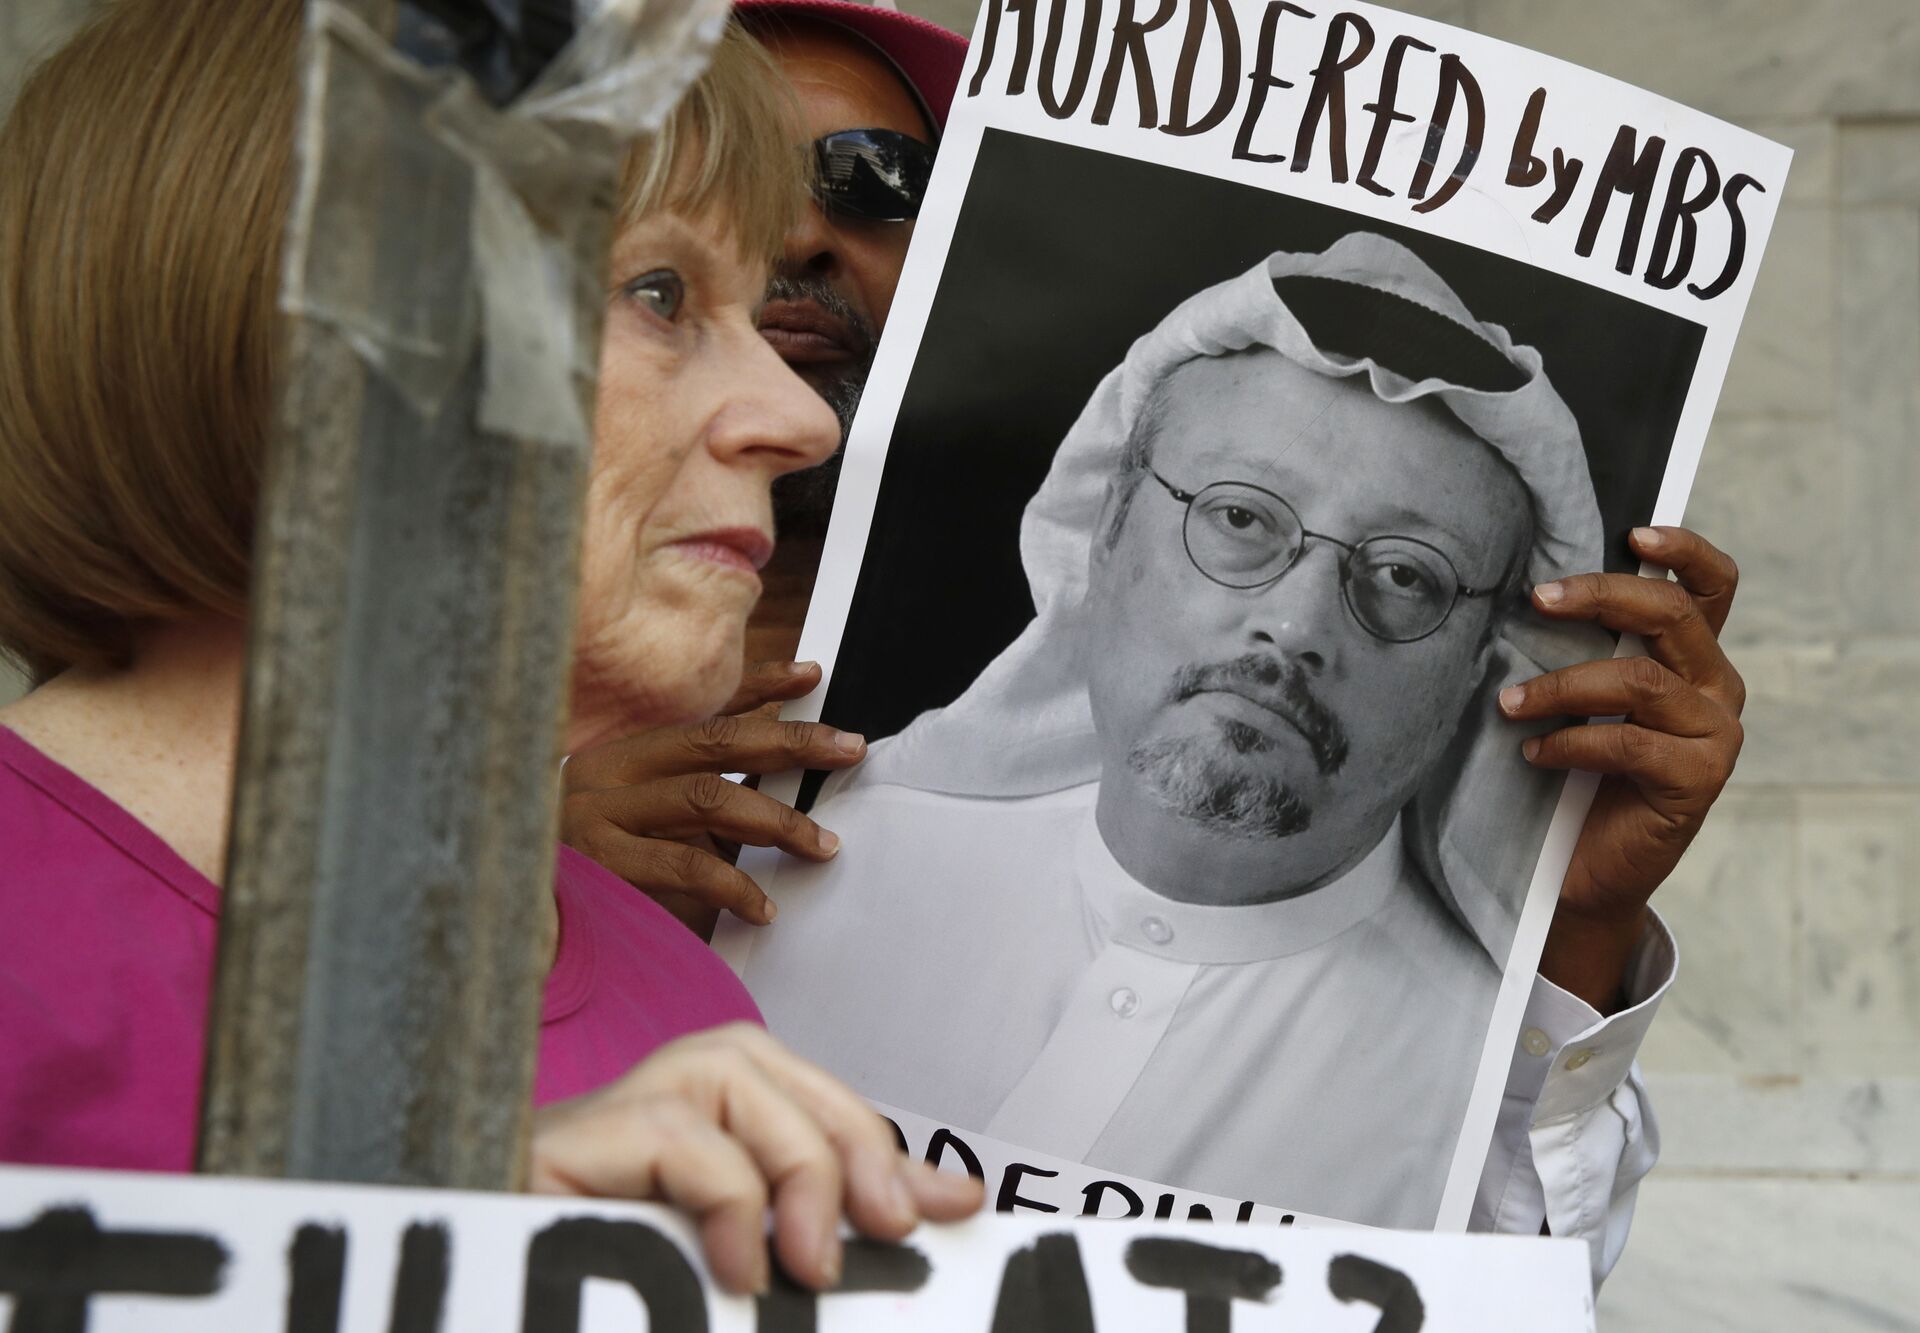 Sauditas envolvidos no assassinato do jornalista Jamal Khashoggi foram treinados nos EUA, diz mídia - Sputnik Brasil, 1920, 23.06.2021